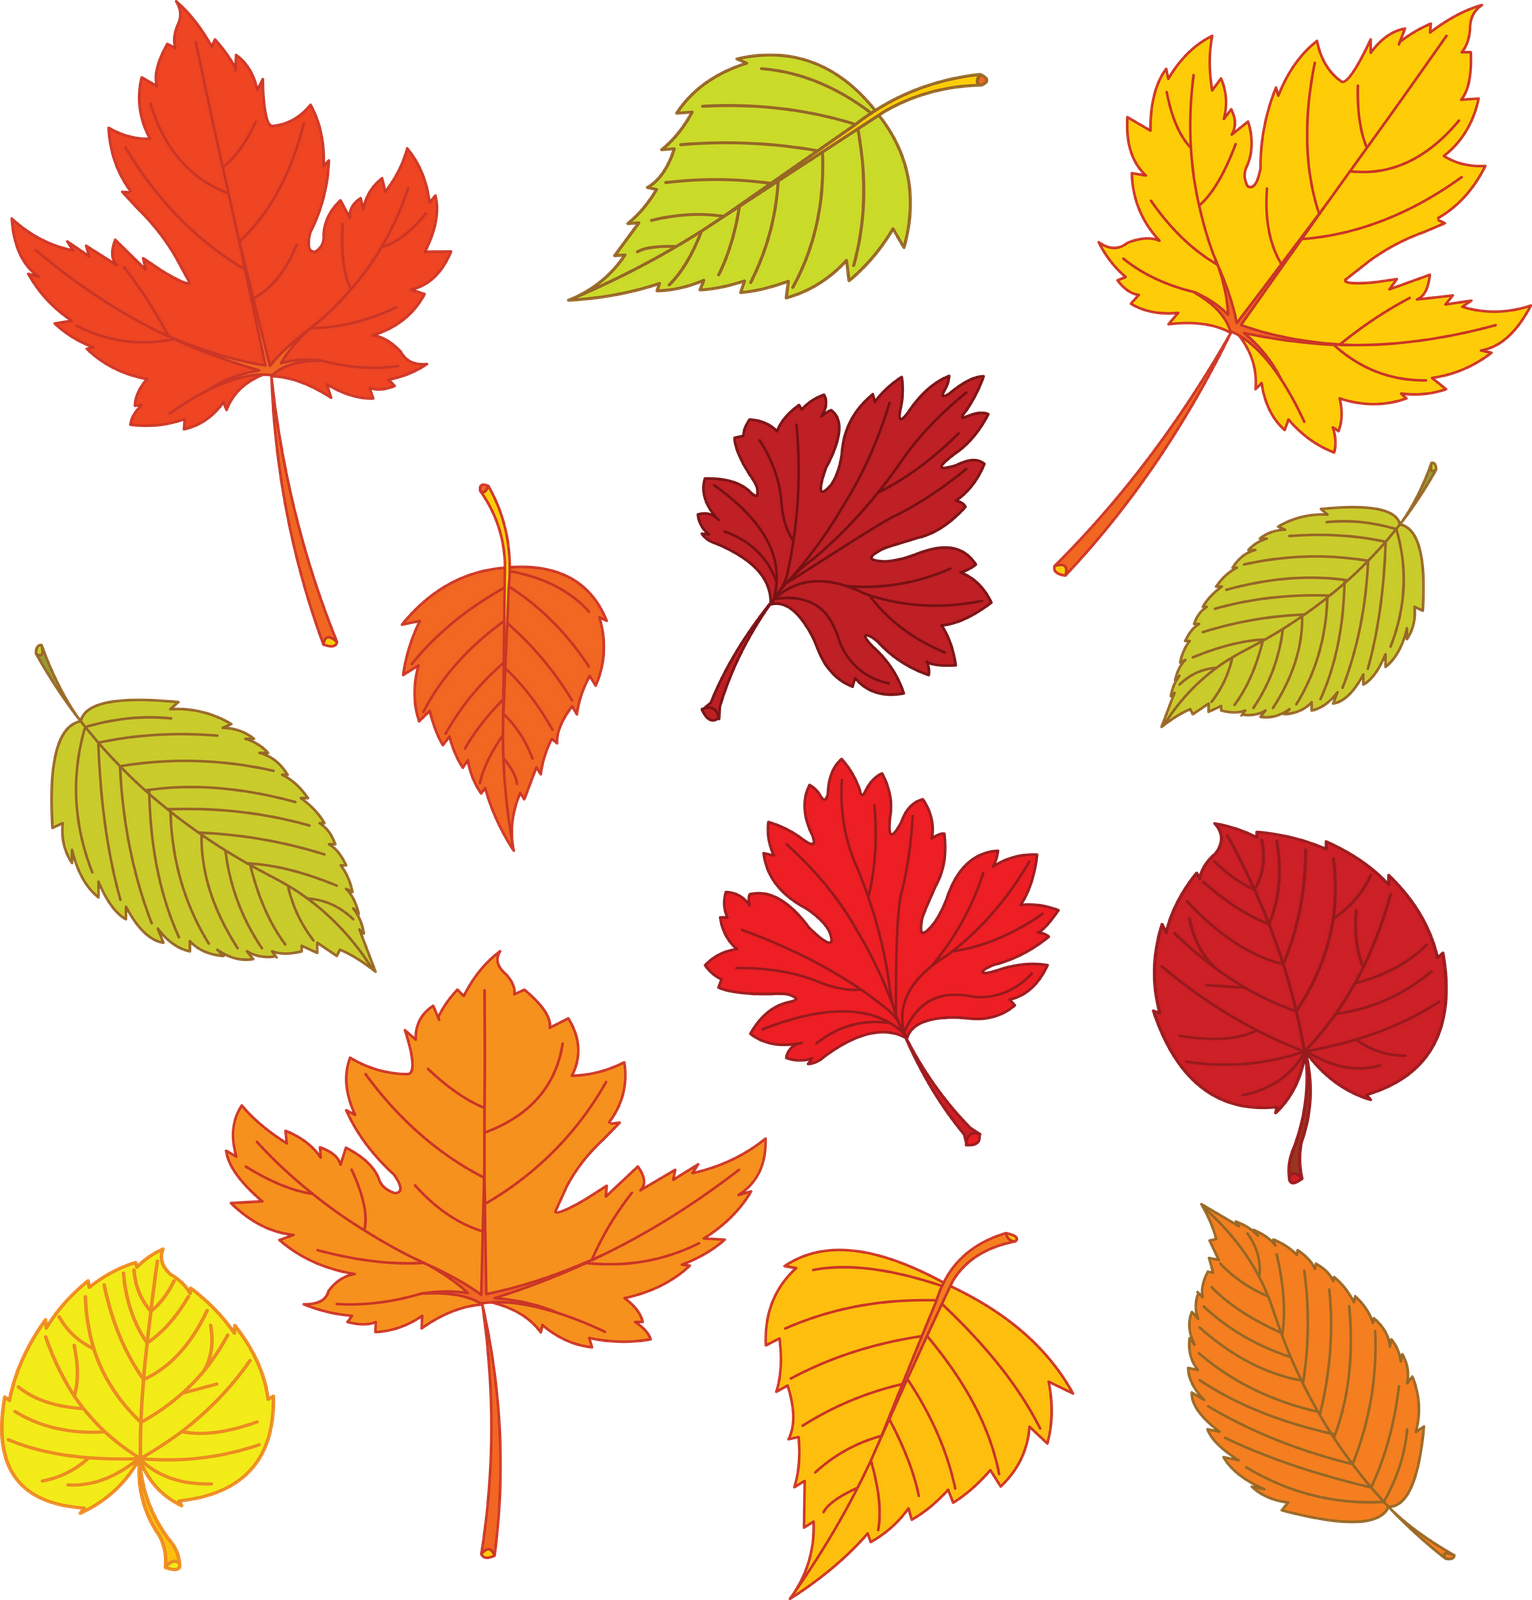 leaf-drawing-template-at-getdrawings-free-download-printable-leaves